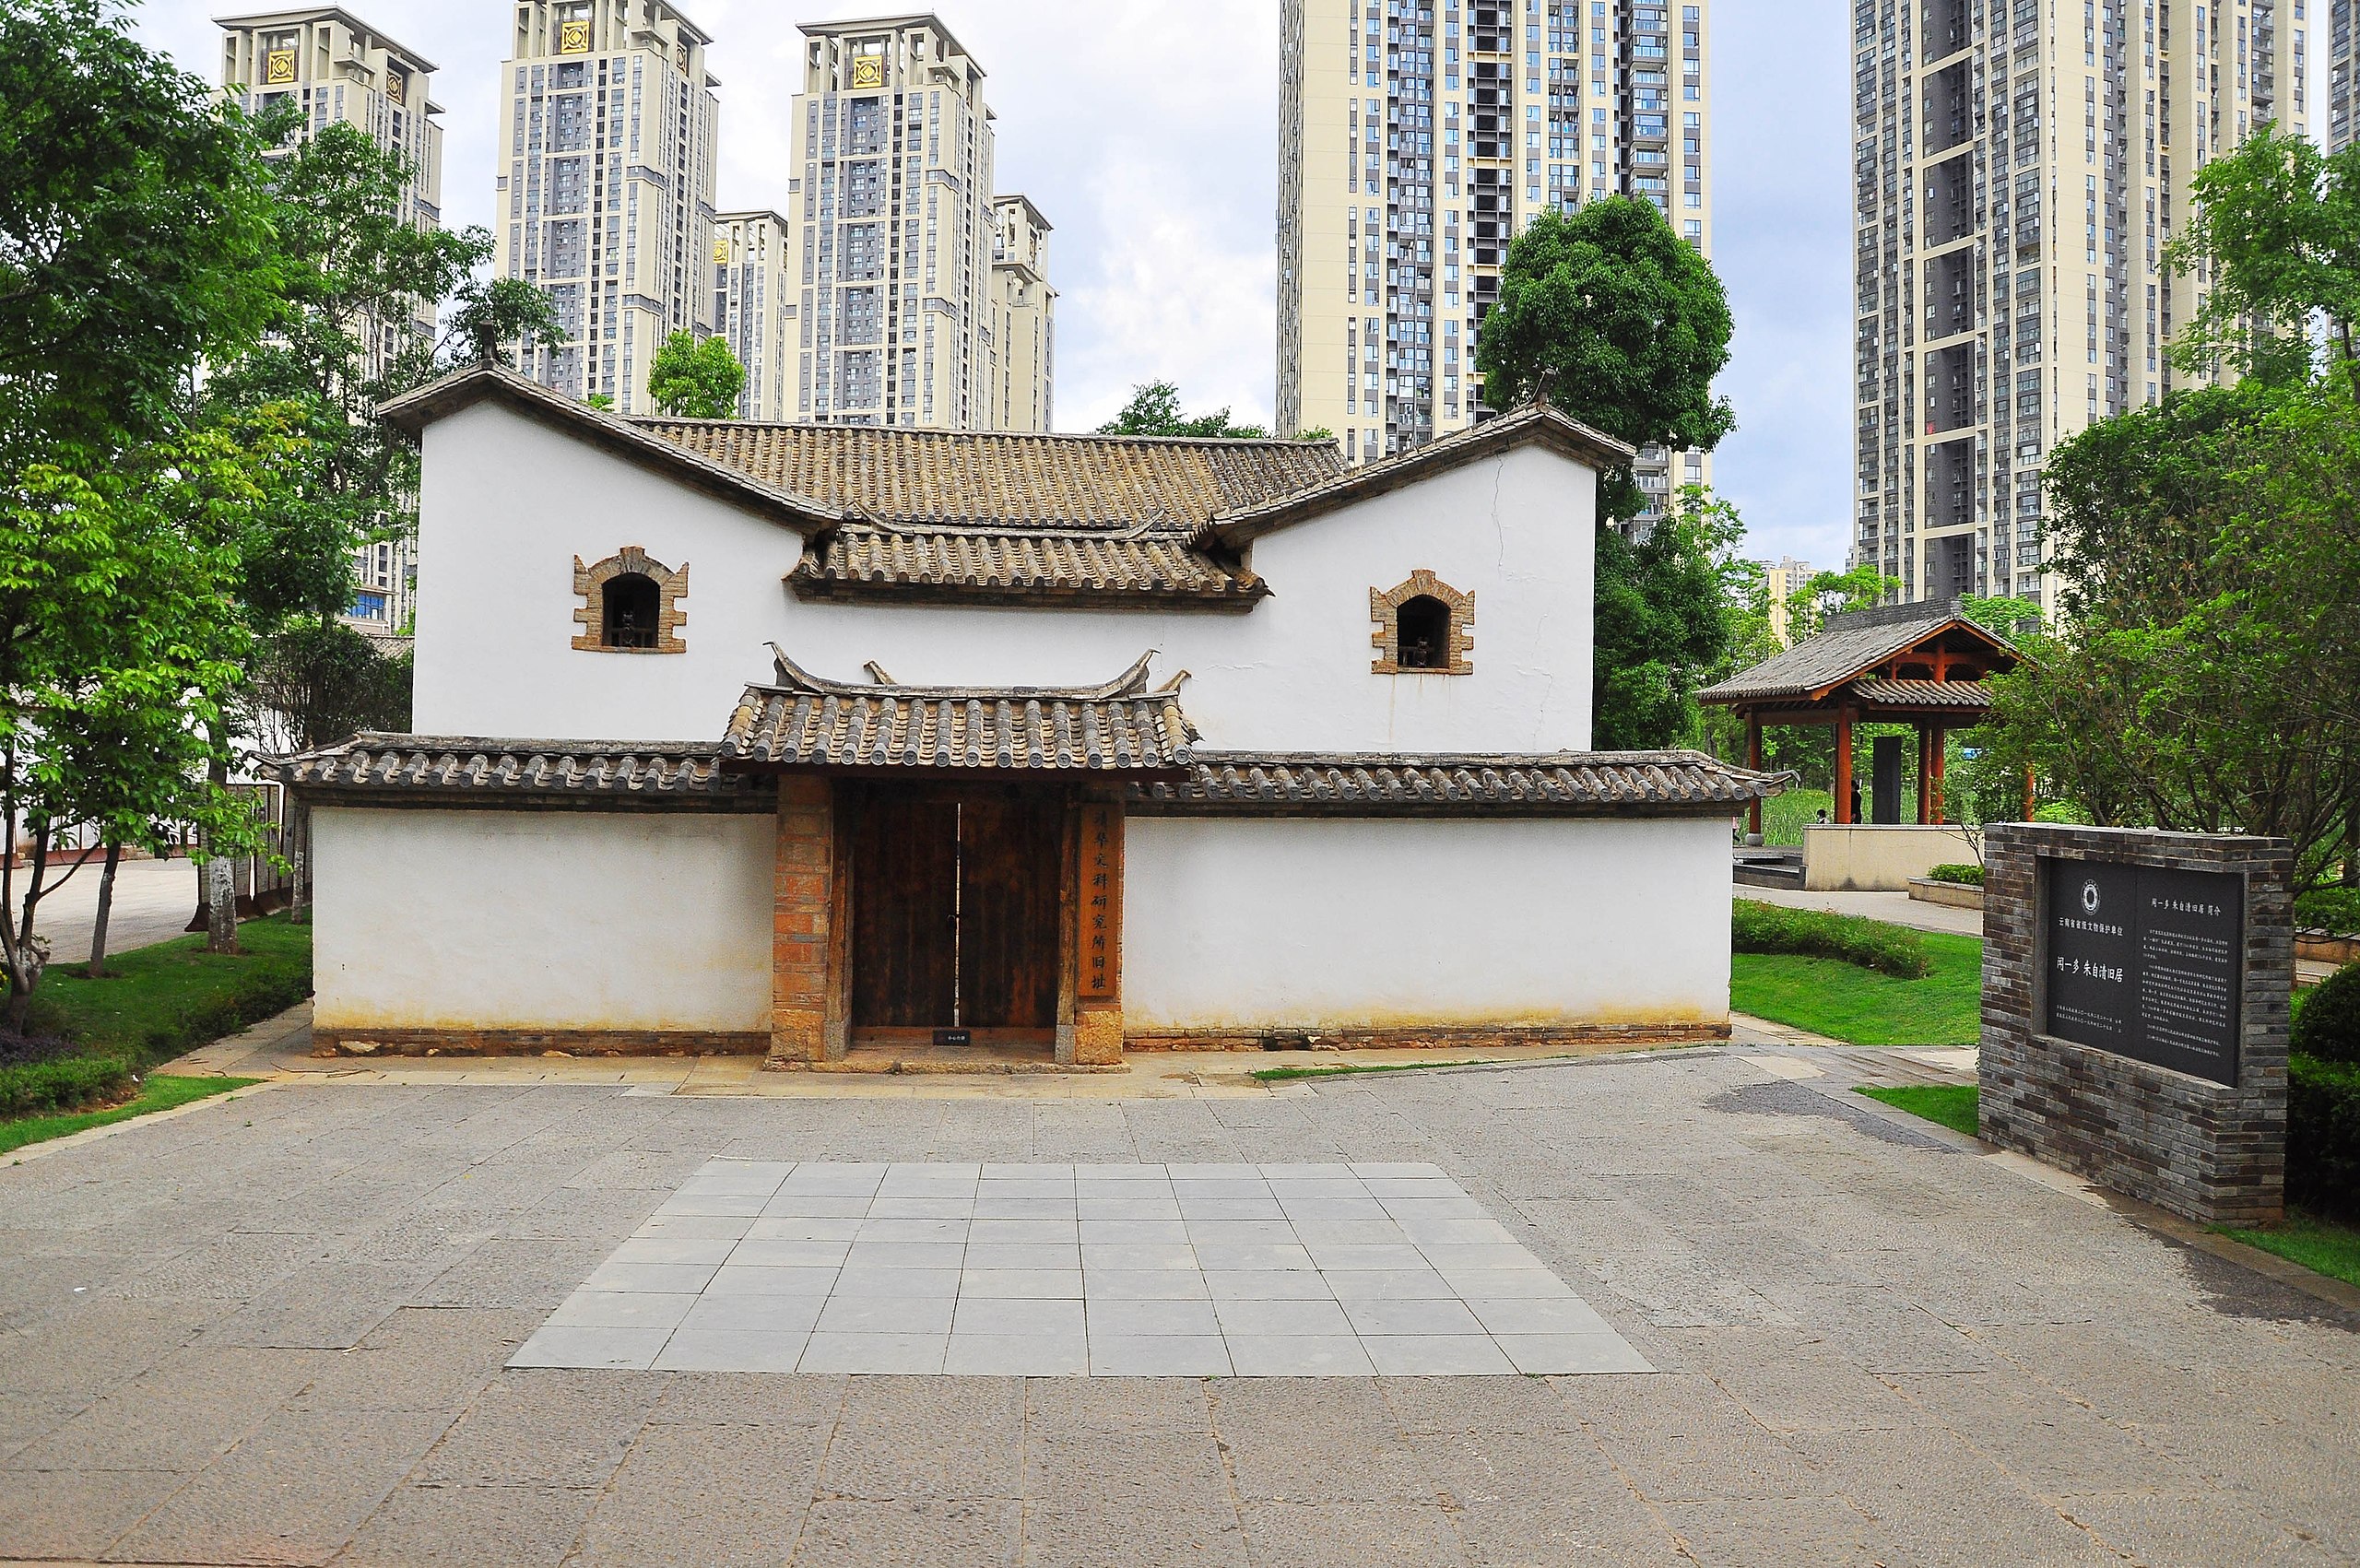 File:The Wen Yiduo & Zhu Ziqing former dwelling in Kunming.jpg 